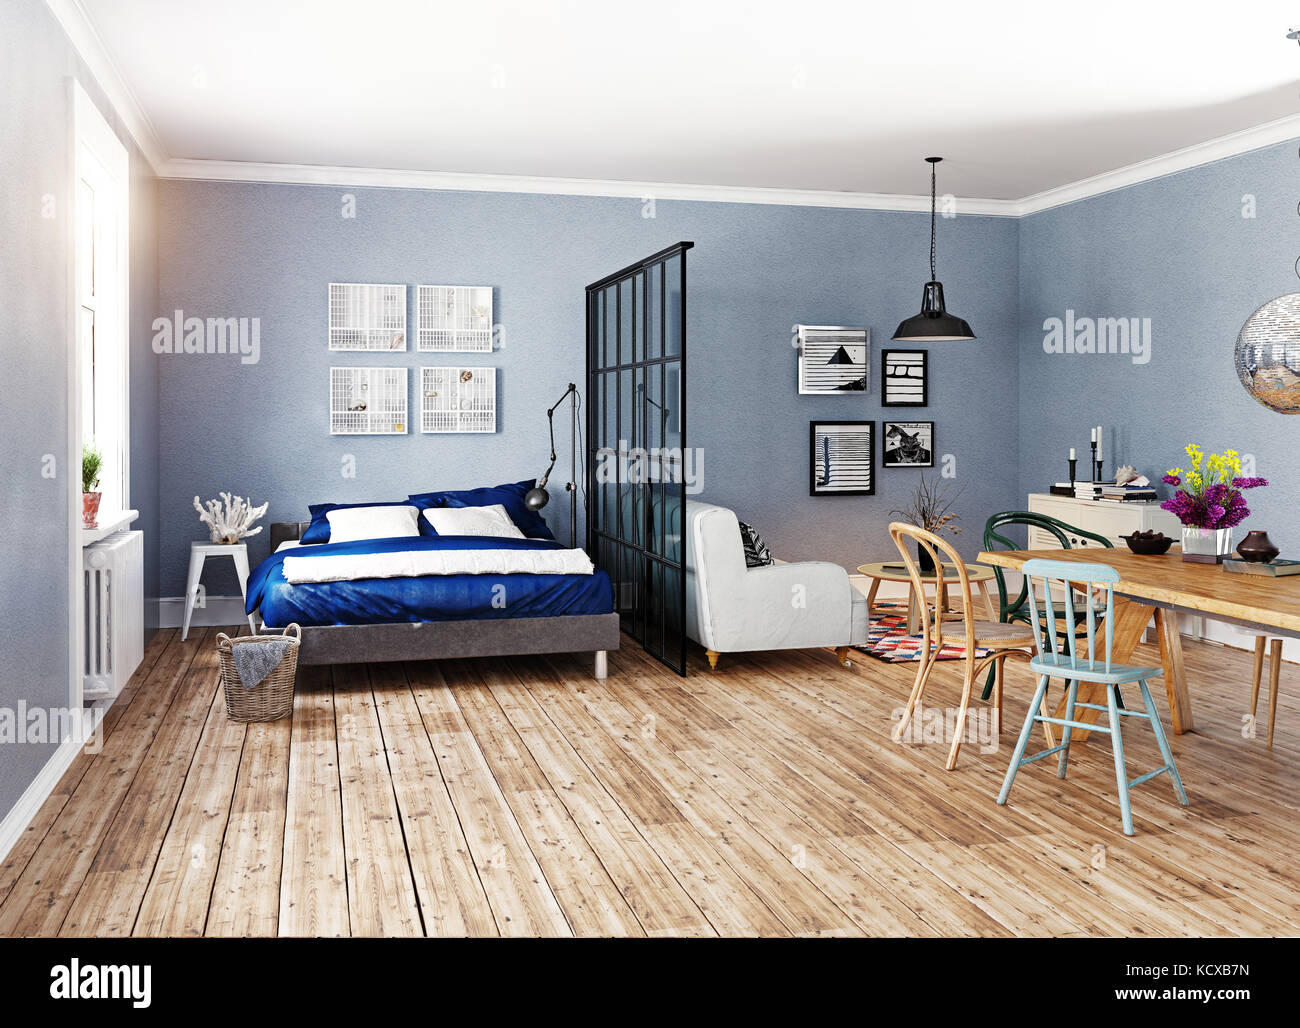 Apartamento moderno de estilo escandinavo. 3D rendering ilustración concepto Foto de stock